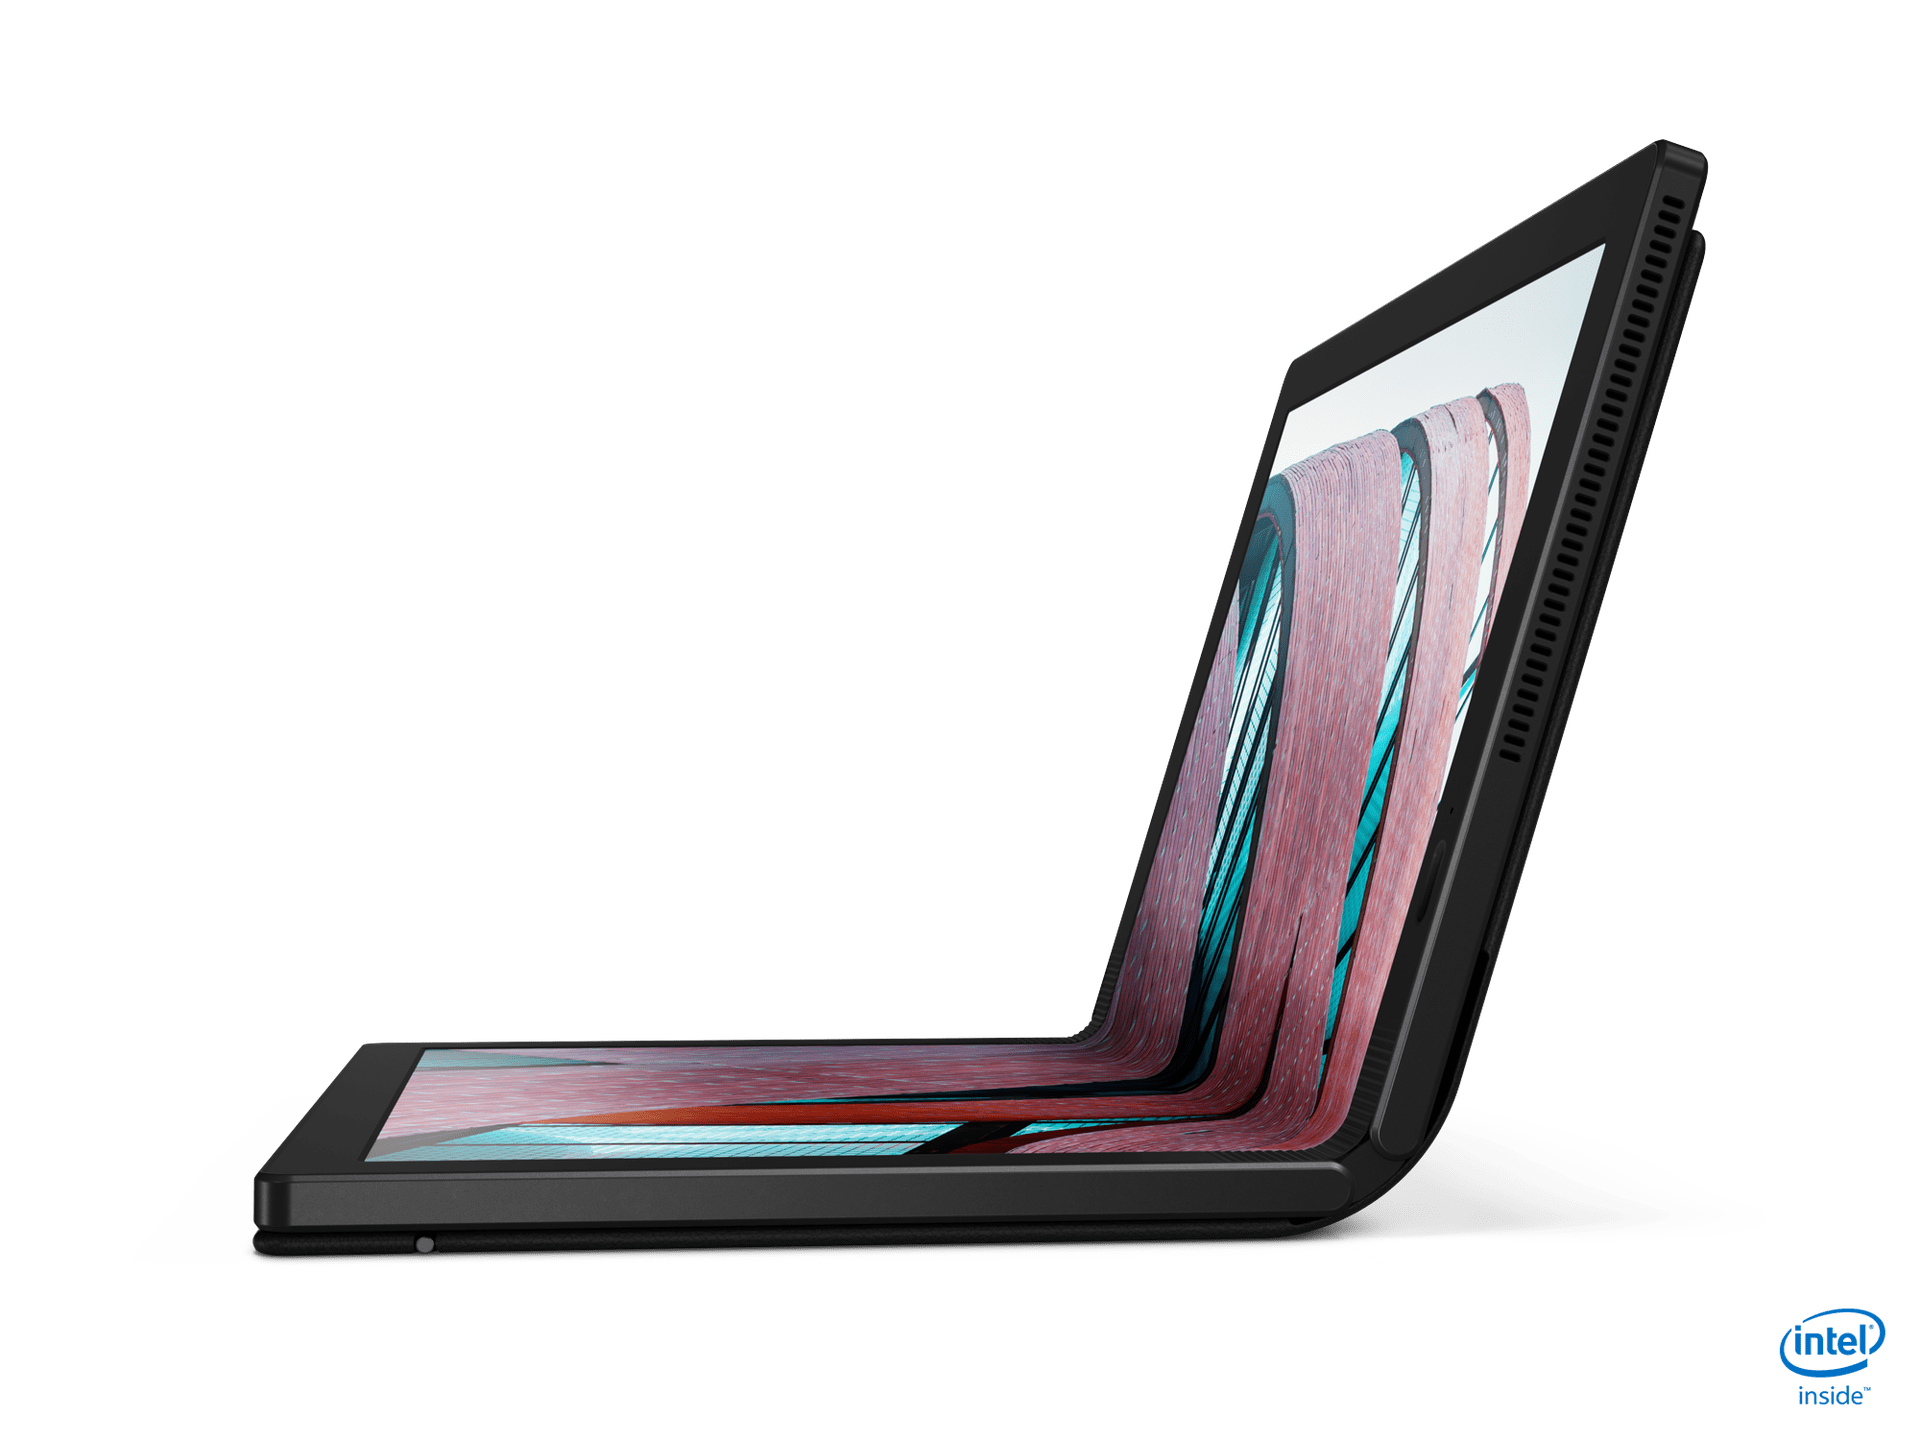 超美品/ThinkPad X1 Tablet/Office/No173